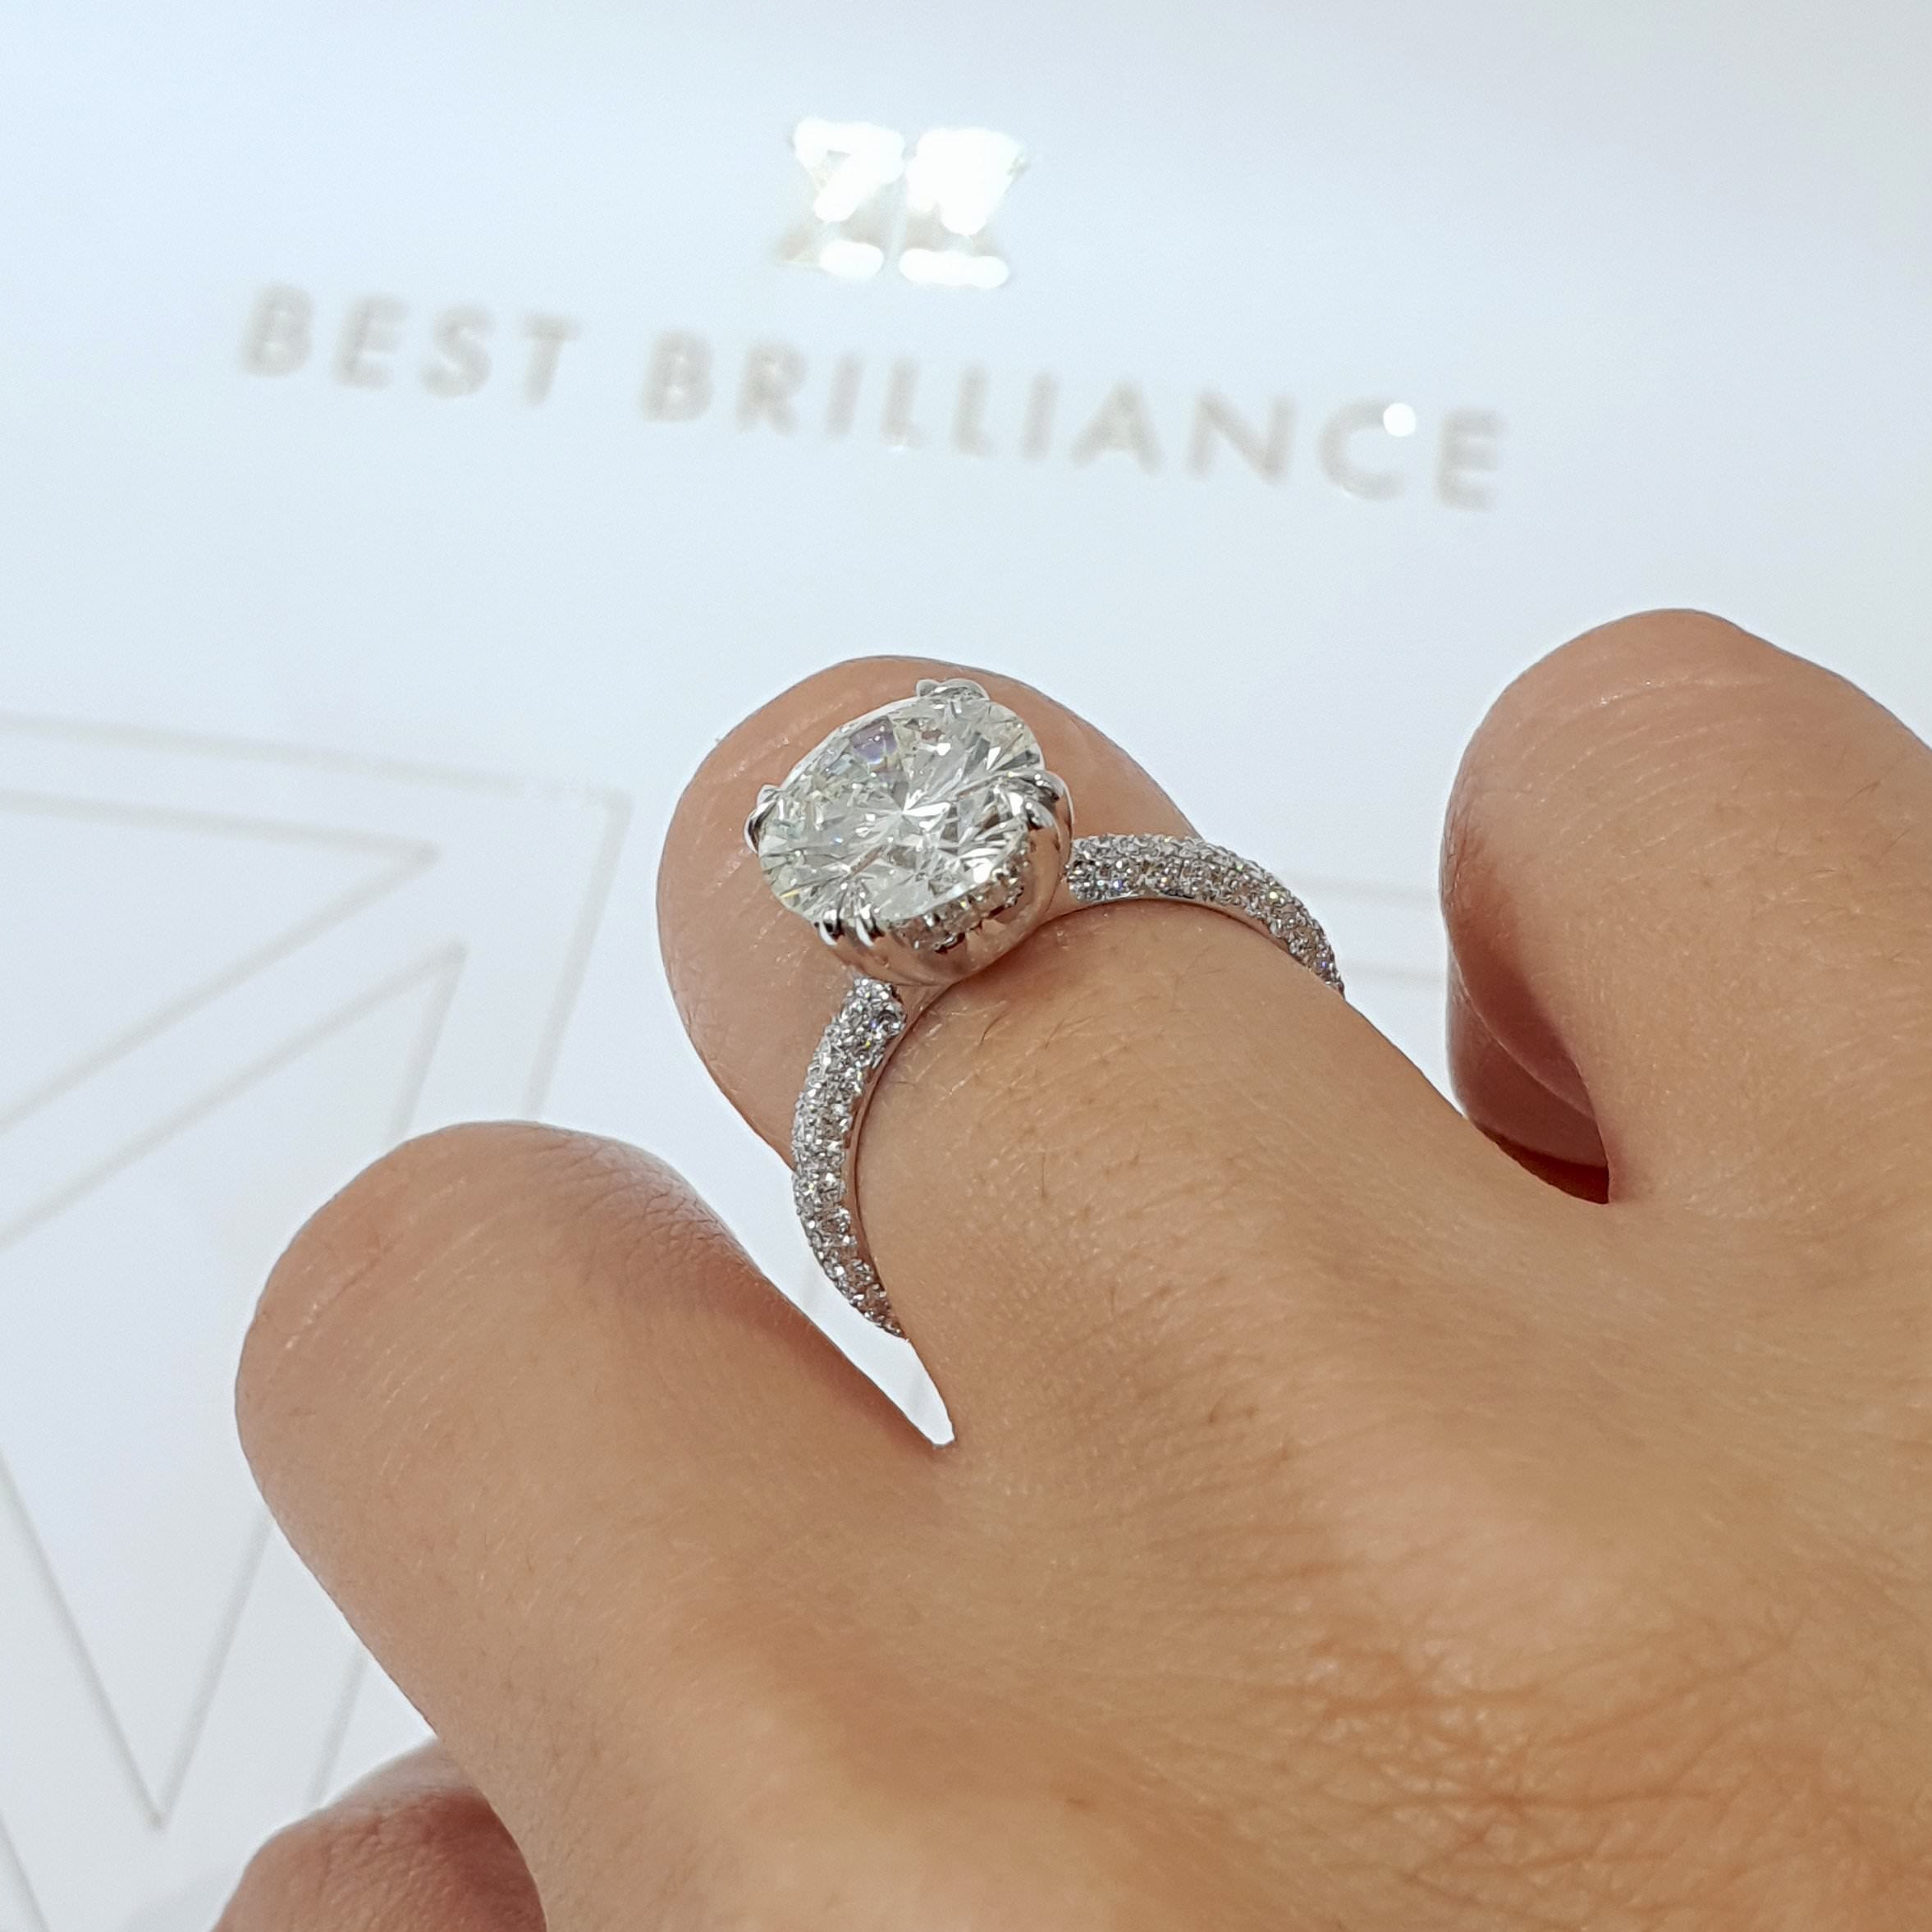 Lorena Lab Grown Diamond Ring   (3.5 Carat) -14K White Gold